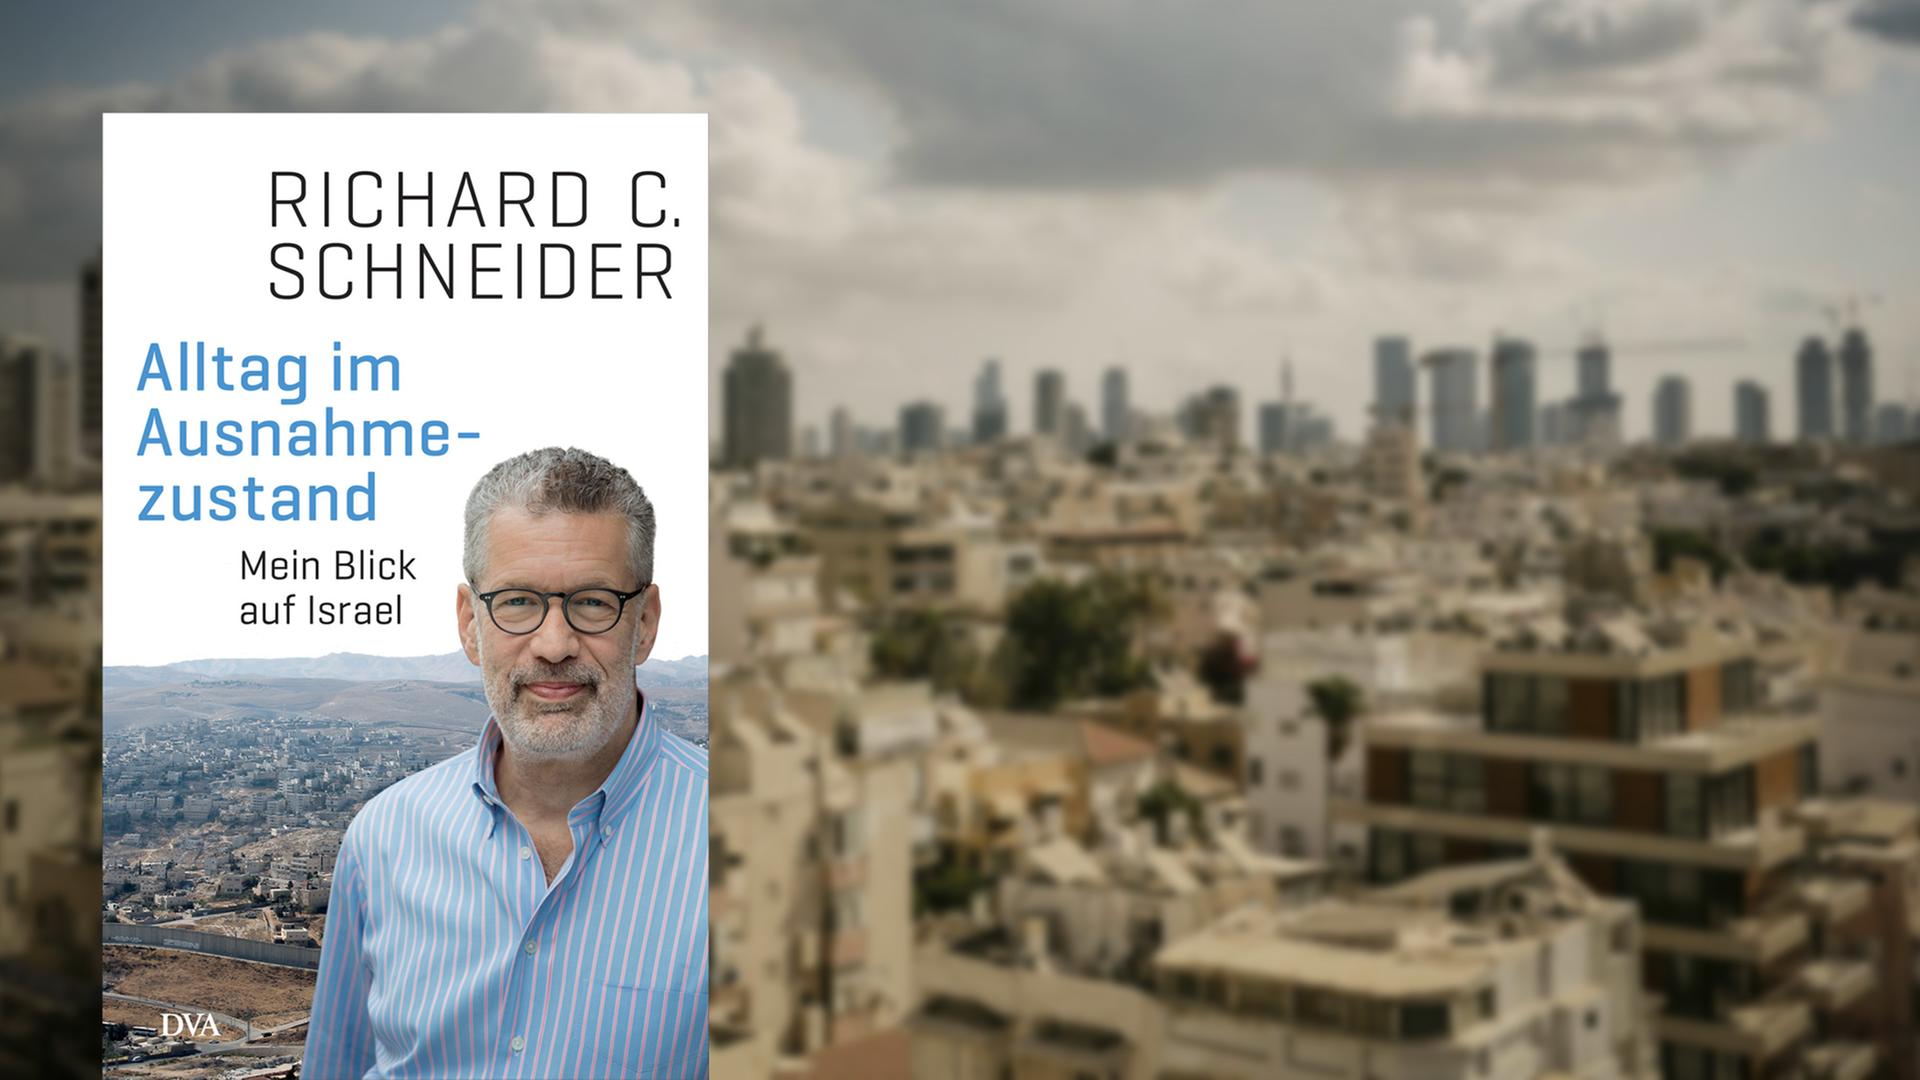 Buchcover "Alltag im Ausnahmezustand" von Richard C. Schneider, im Hintergrund ein Blick über Tel Aviv